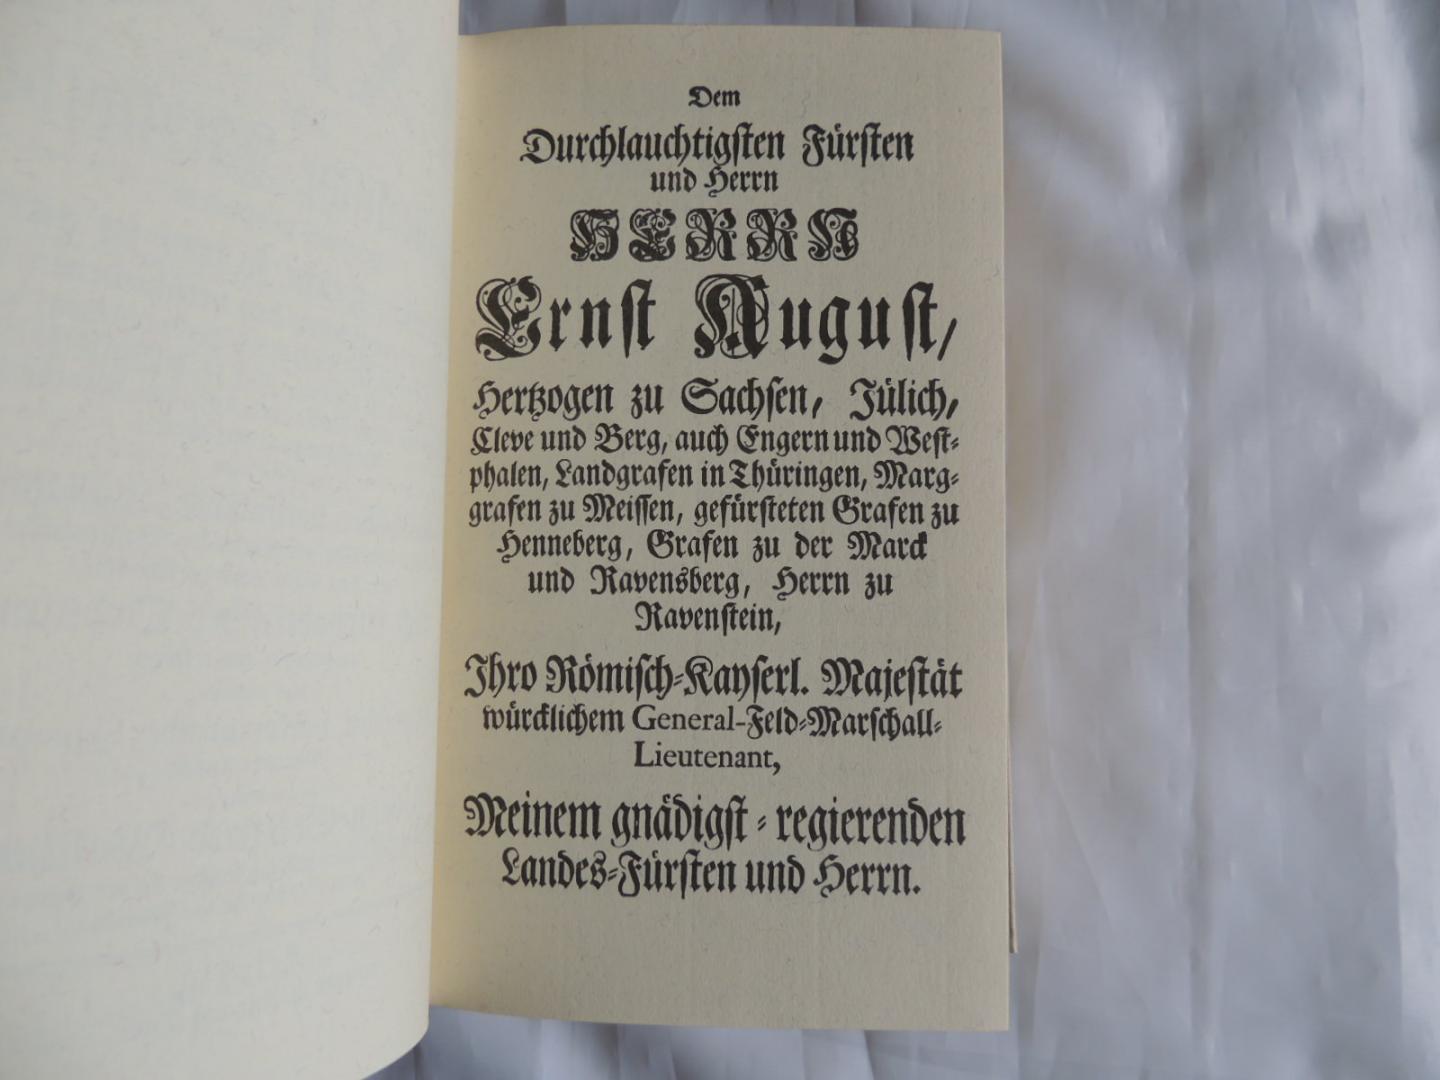 Johann Gottfried Walther - Richard Schaal. - Musicalisches lexicon oder musikalische bibliothek, 1732 --- Documenta musicologica. Erste reihe: Druckschriften Faksimiles, 3. III.